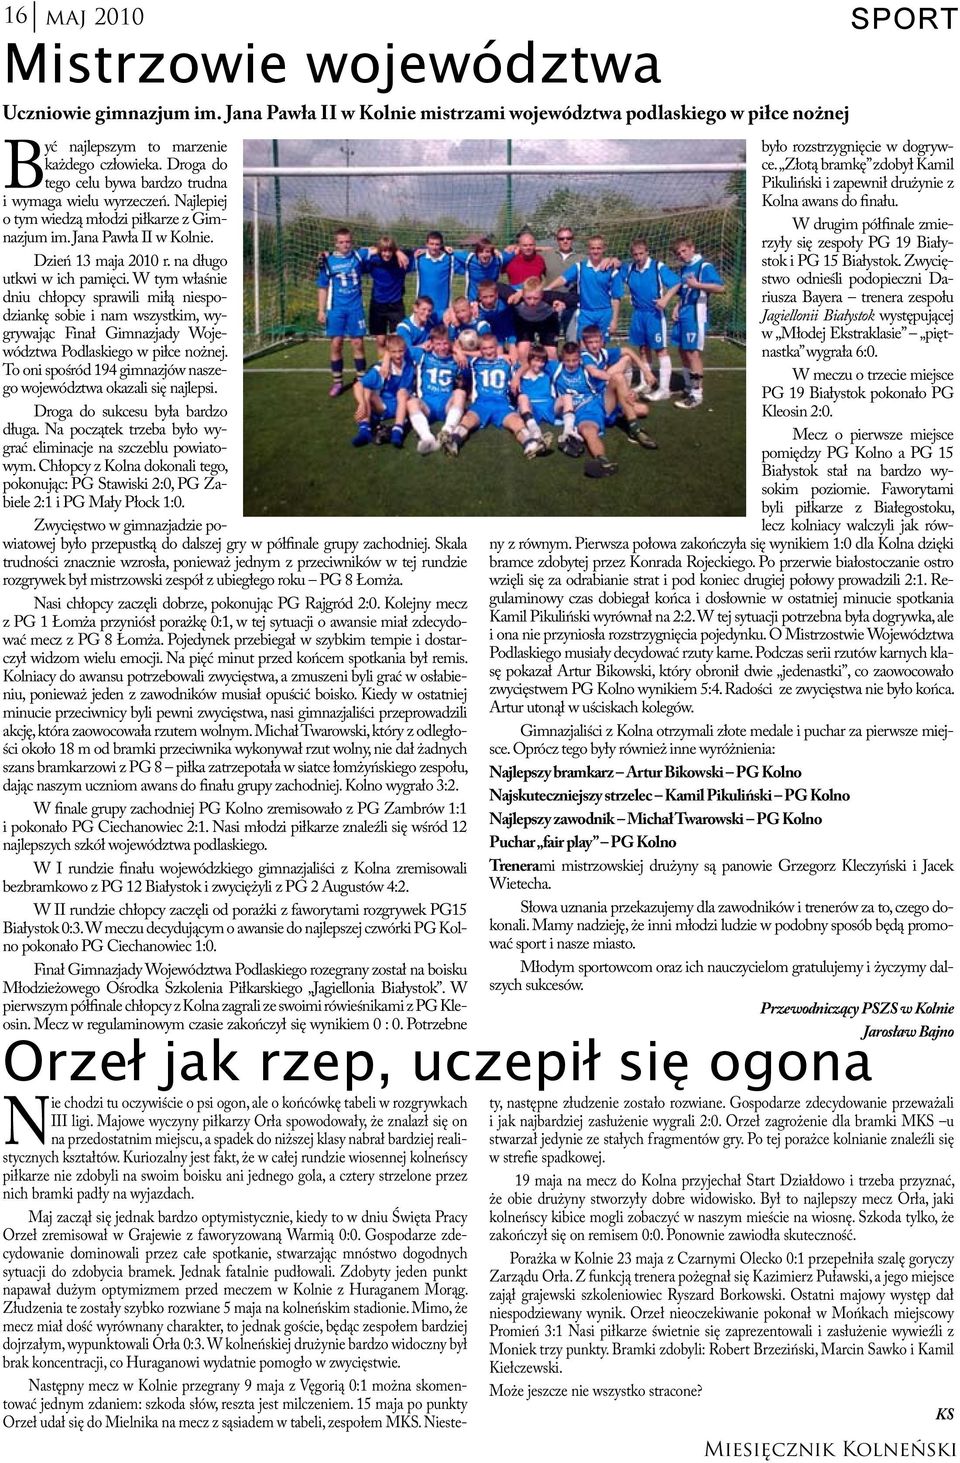 W tym właśnie dniu chłopcy sprawili miłą niespodziankę sobie i nam wszystkim, wygrywając Finał Gimnazjady Województwa Podlaskiego w piłce nożnej.